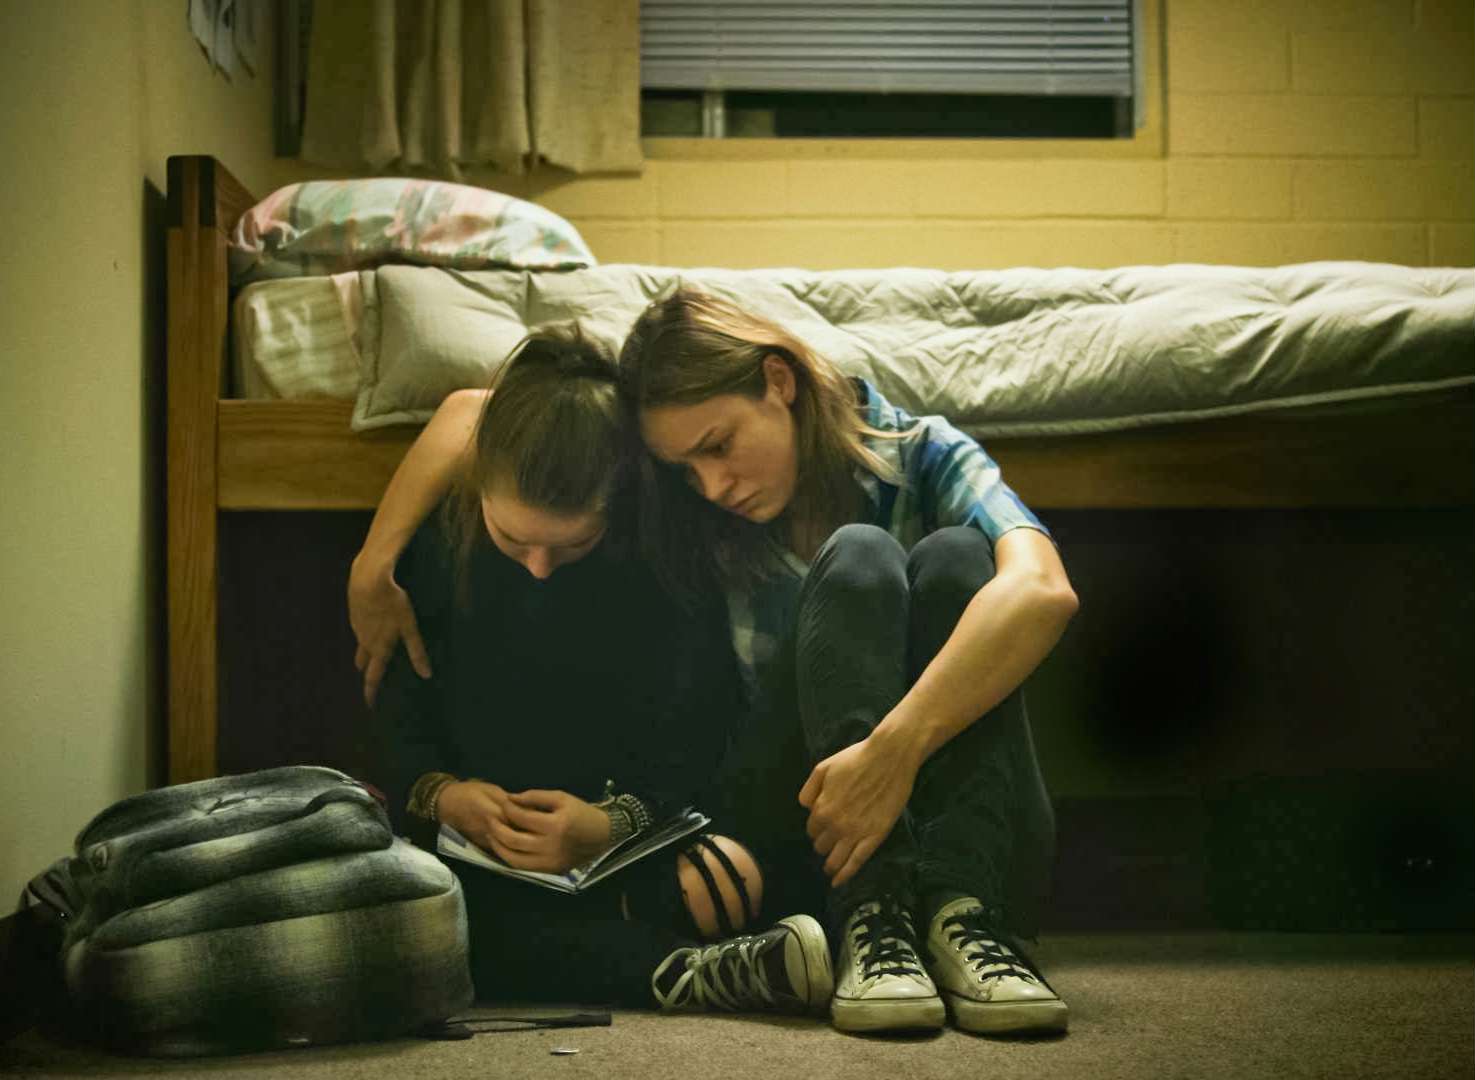 Фильмы о подростках сексе наркотиках как купить наркотик спб